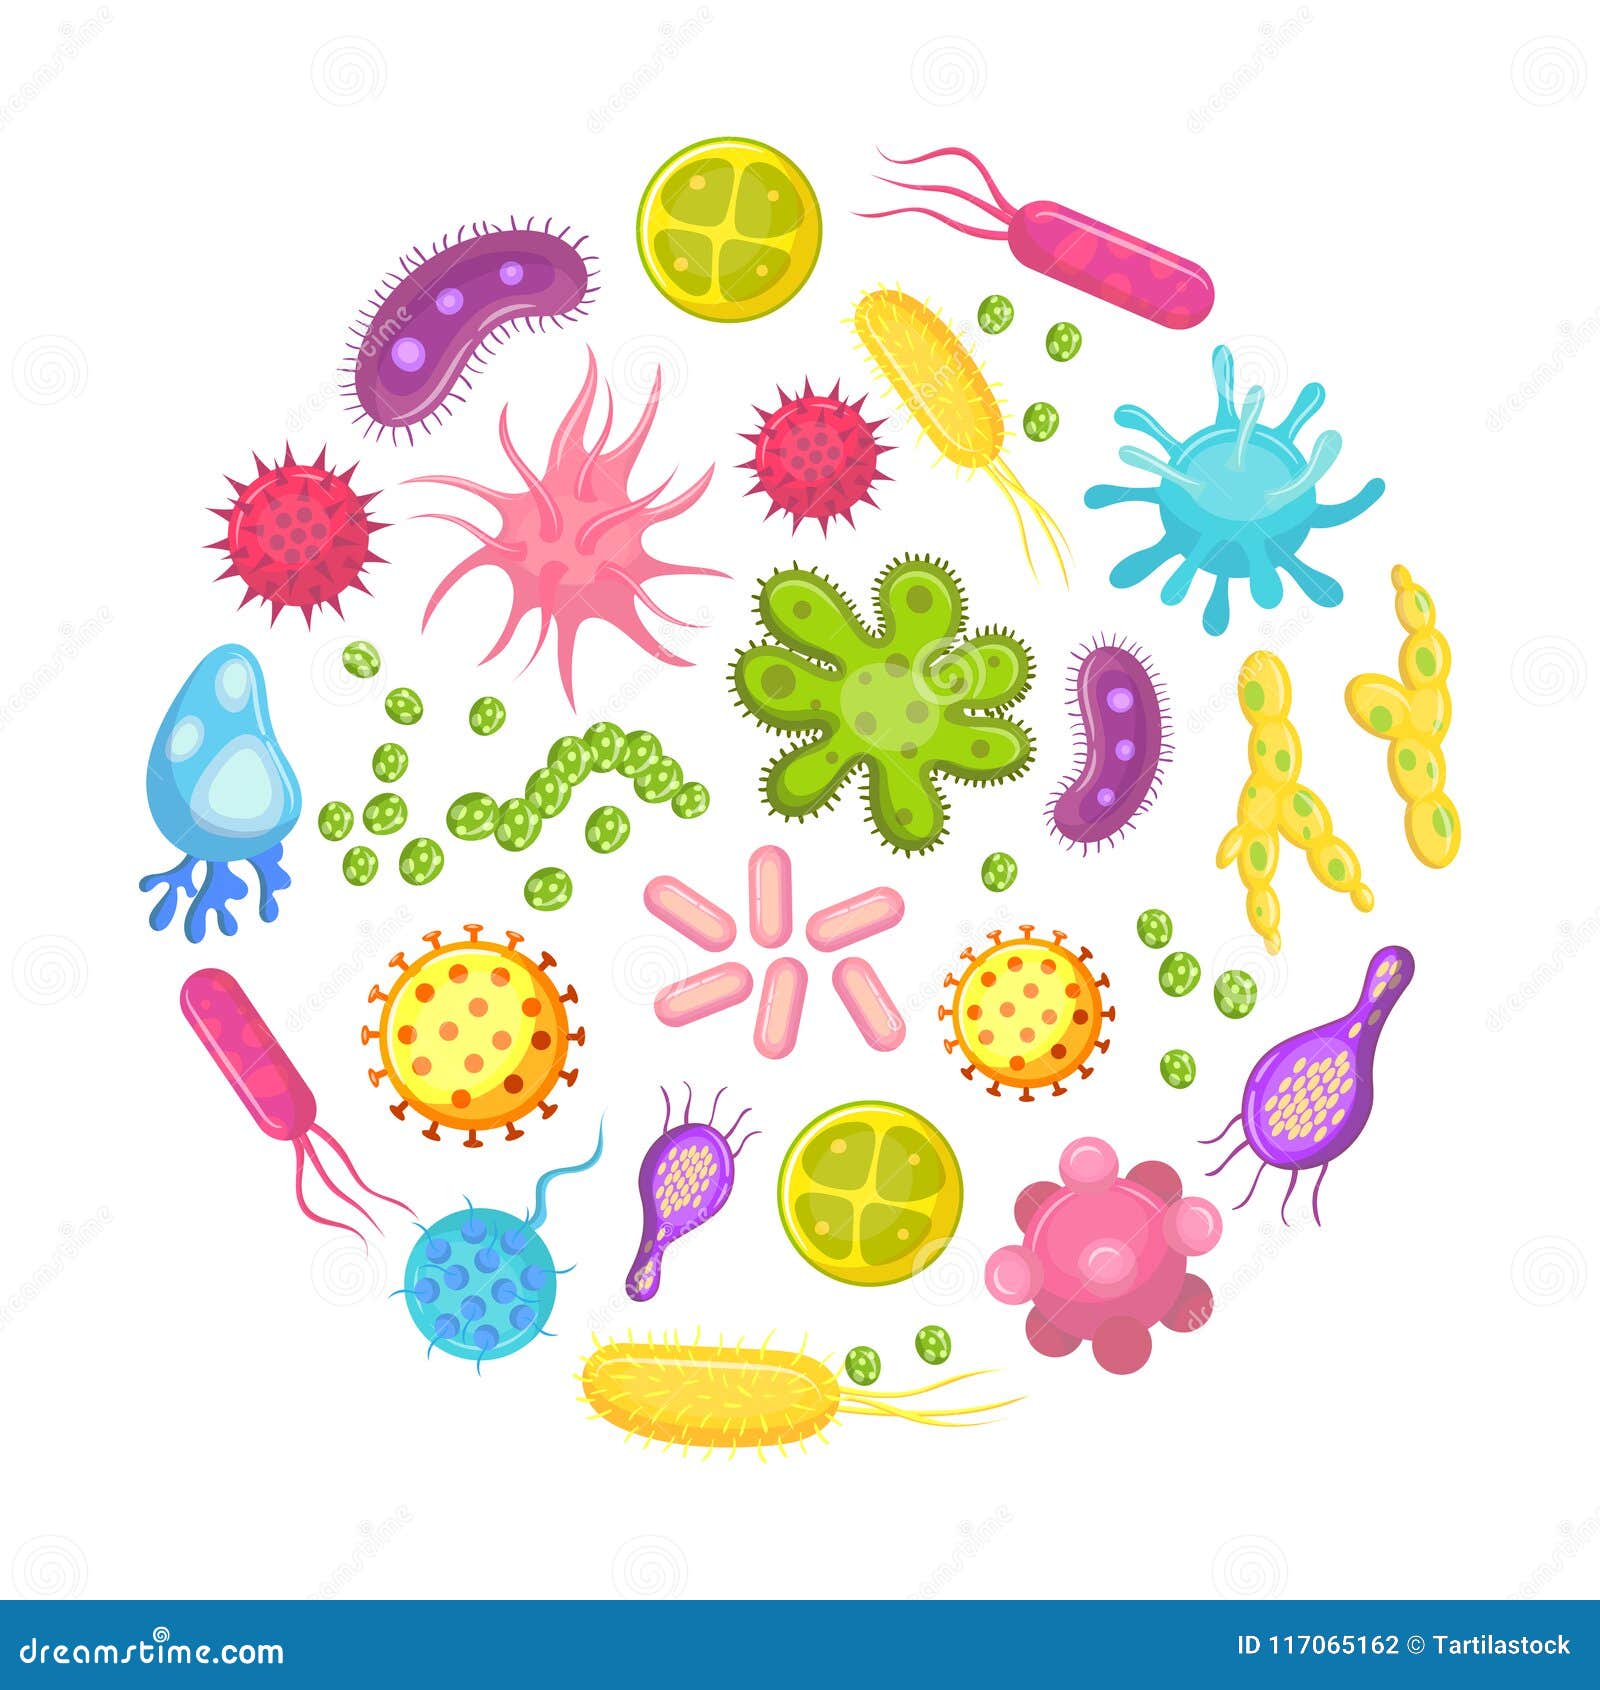 microorganism, bacteria, virus cell, disease bacterium and fungi cells. micro organism, diseases and viruses cartoon